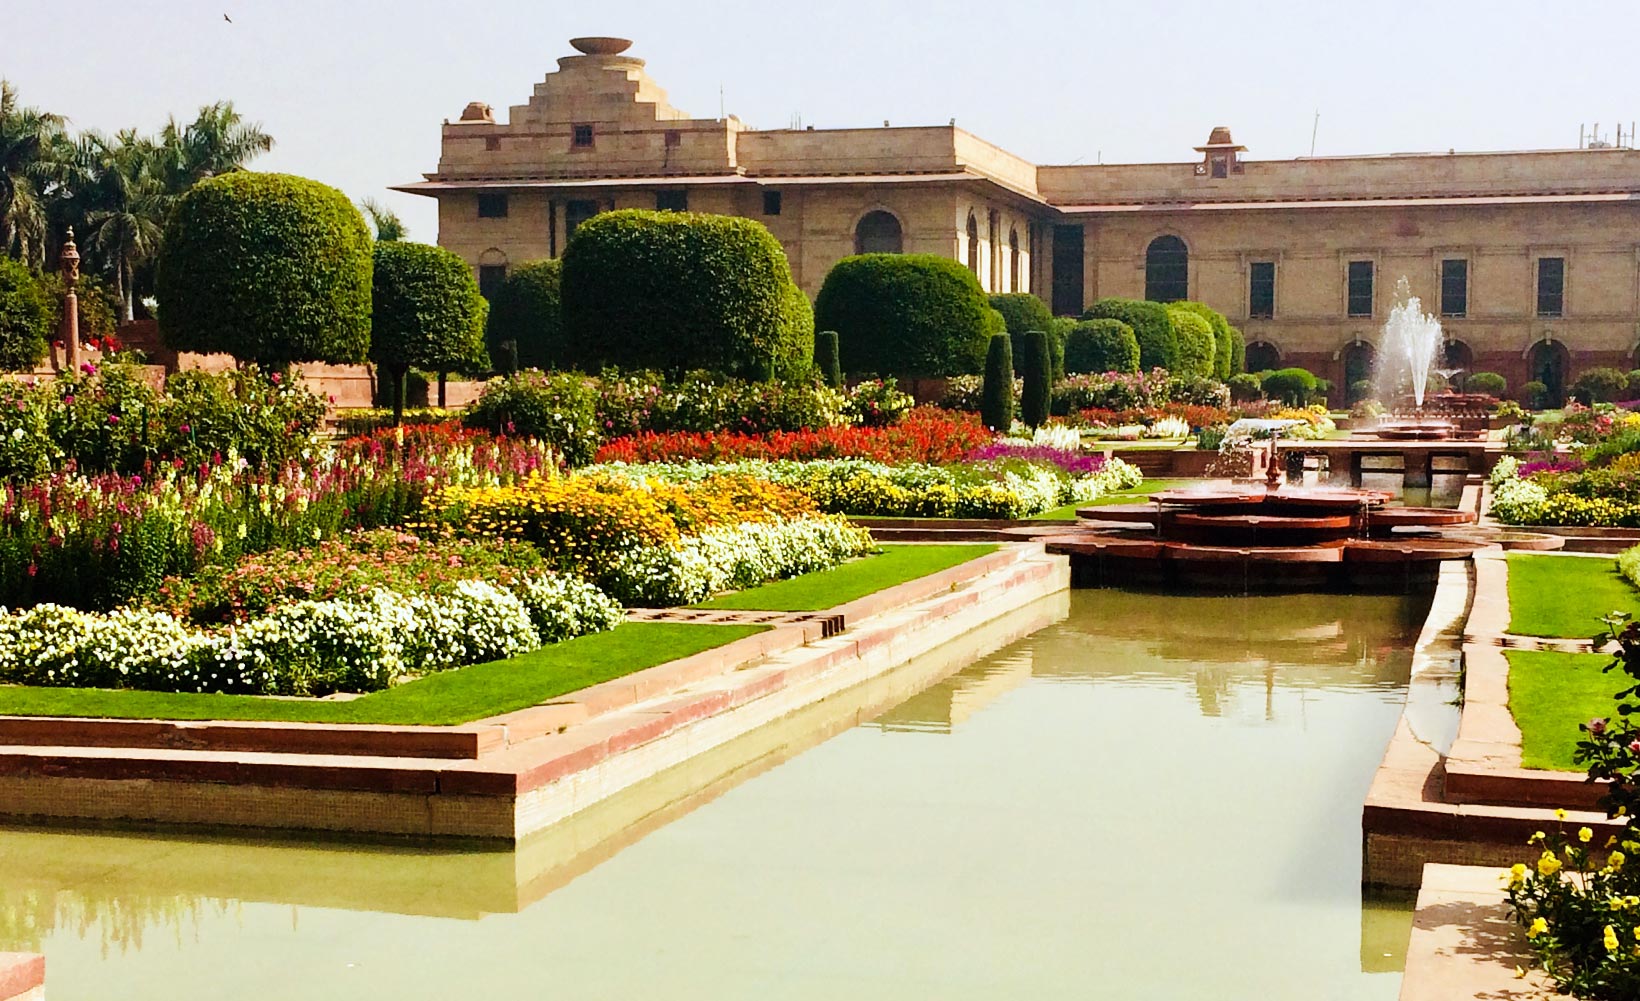 Merken Sie sich das Datum vor! Mughal Garden öffnet bald seine Pforten, wenn frische Blumen blühen